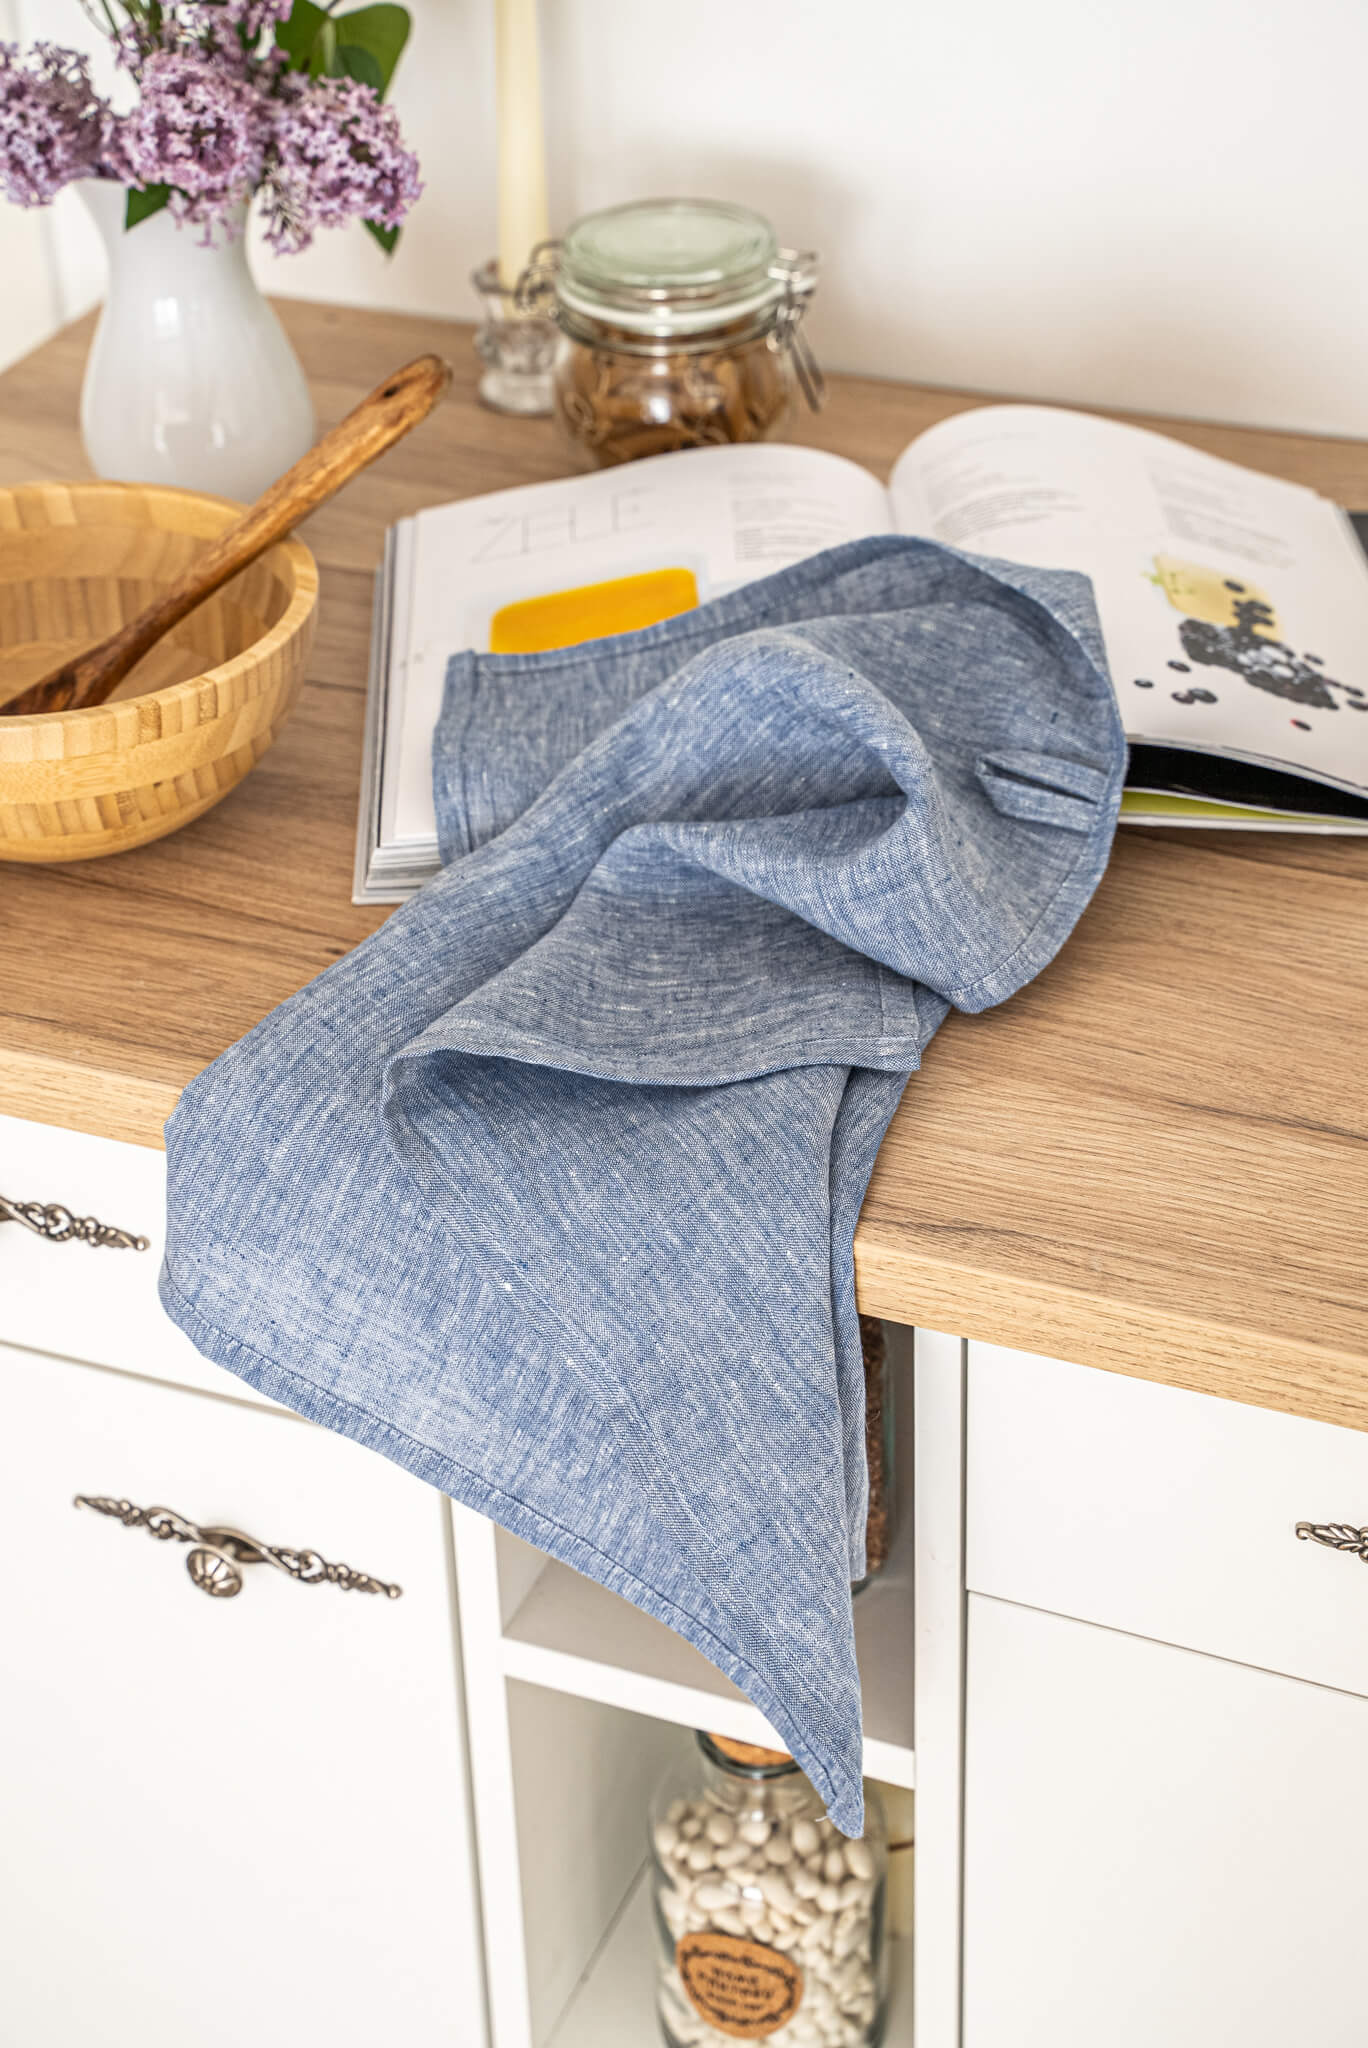 Linen tea towels set of 2 in Melange Blue color